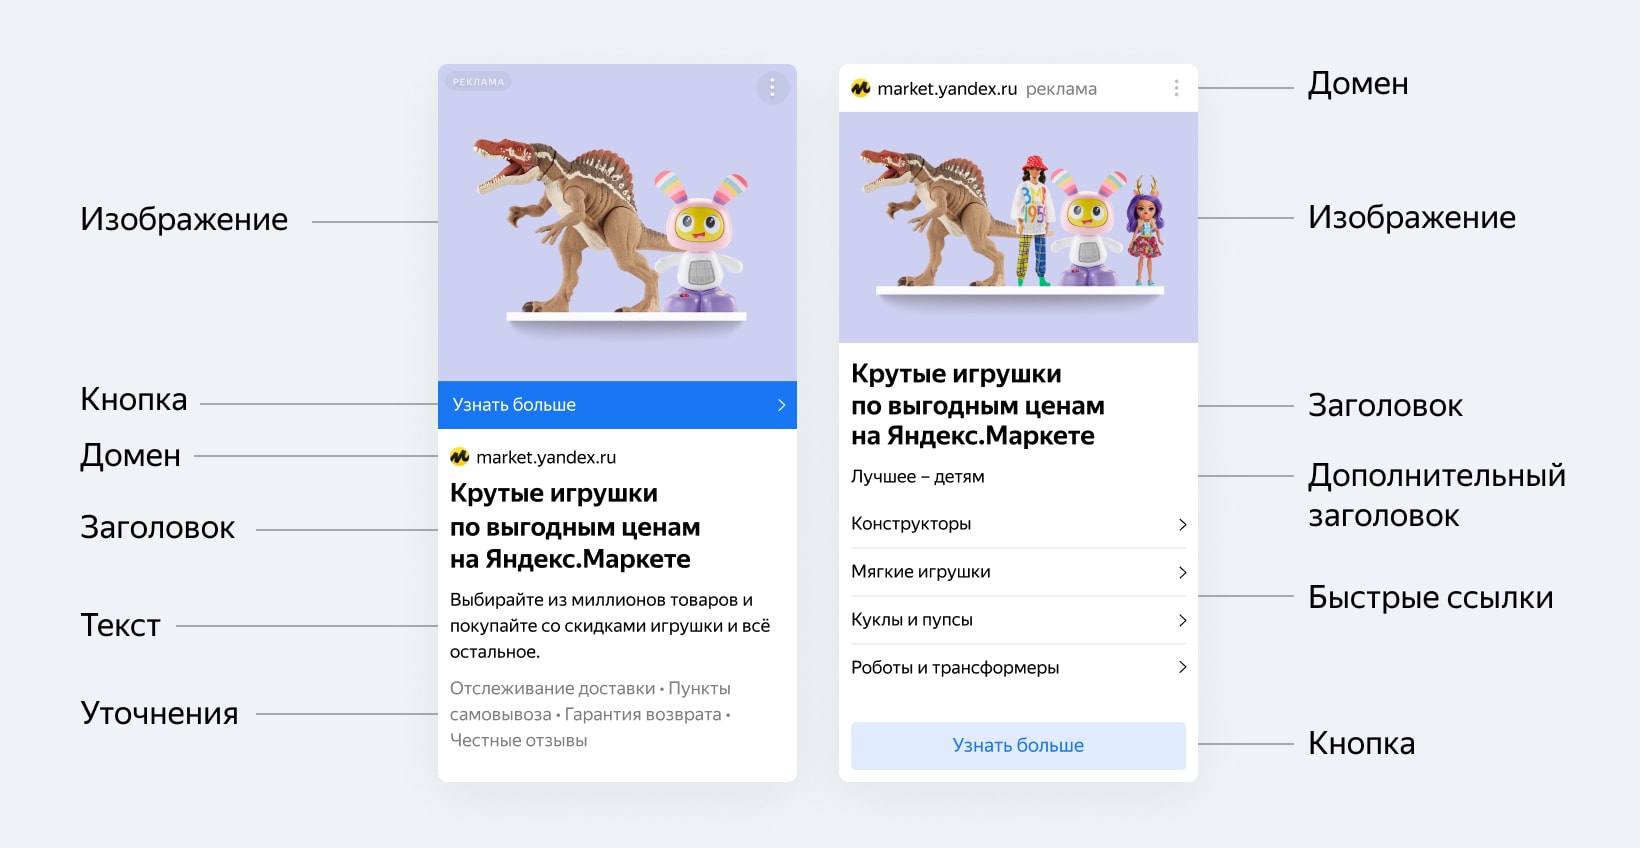 Яндекс представил новую технологию для для объявлений в РСЯ